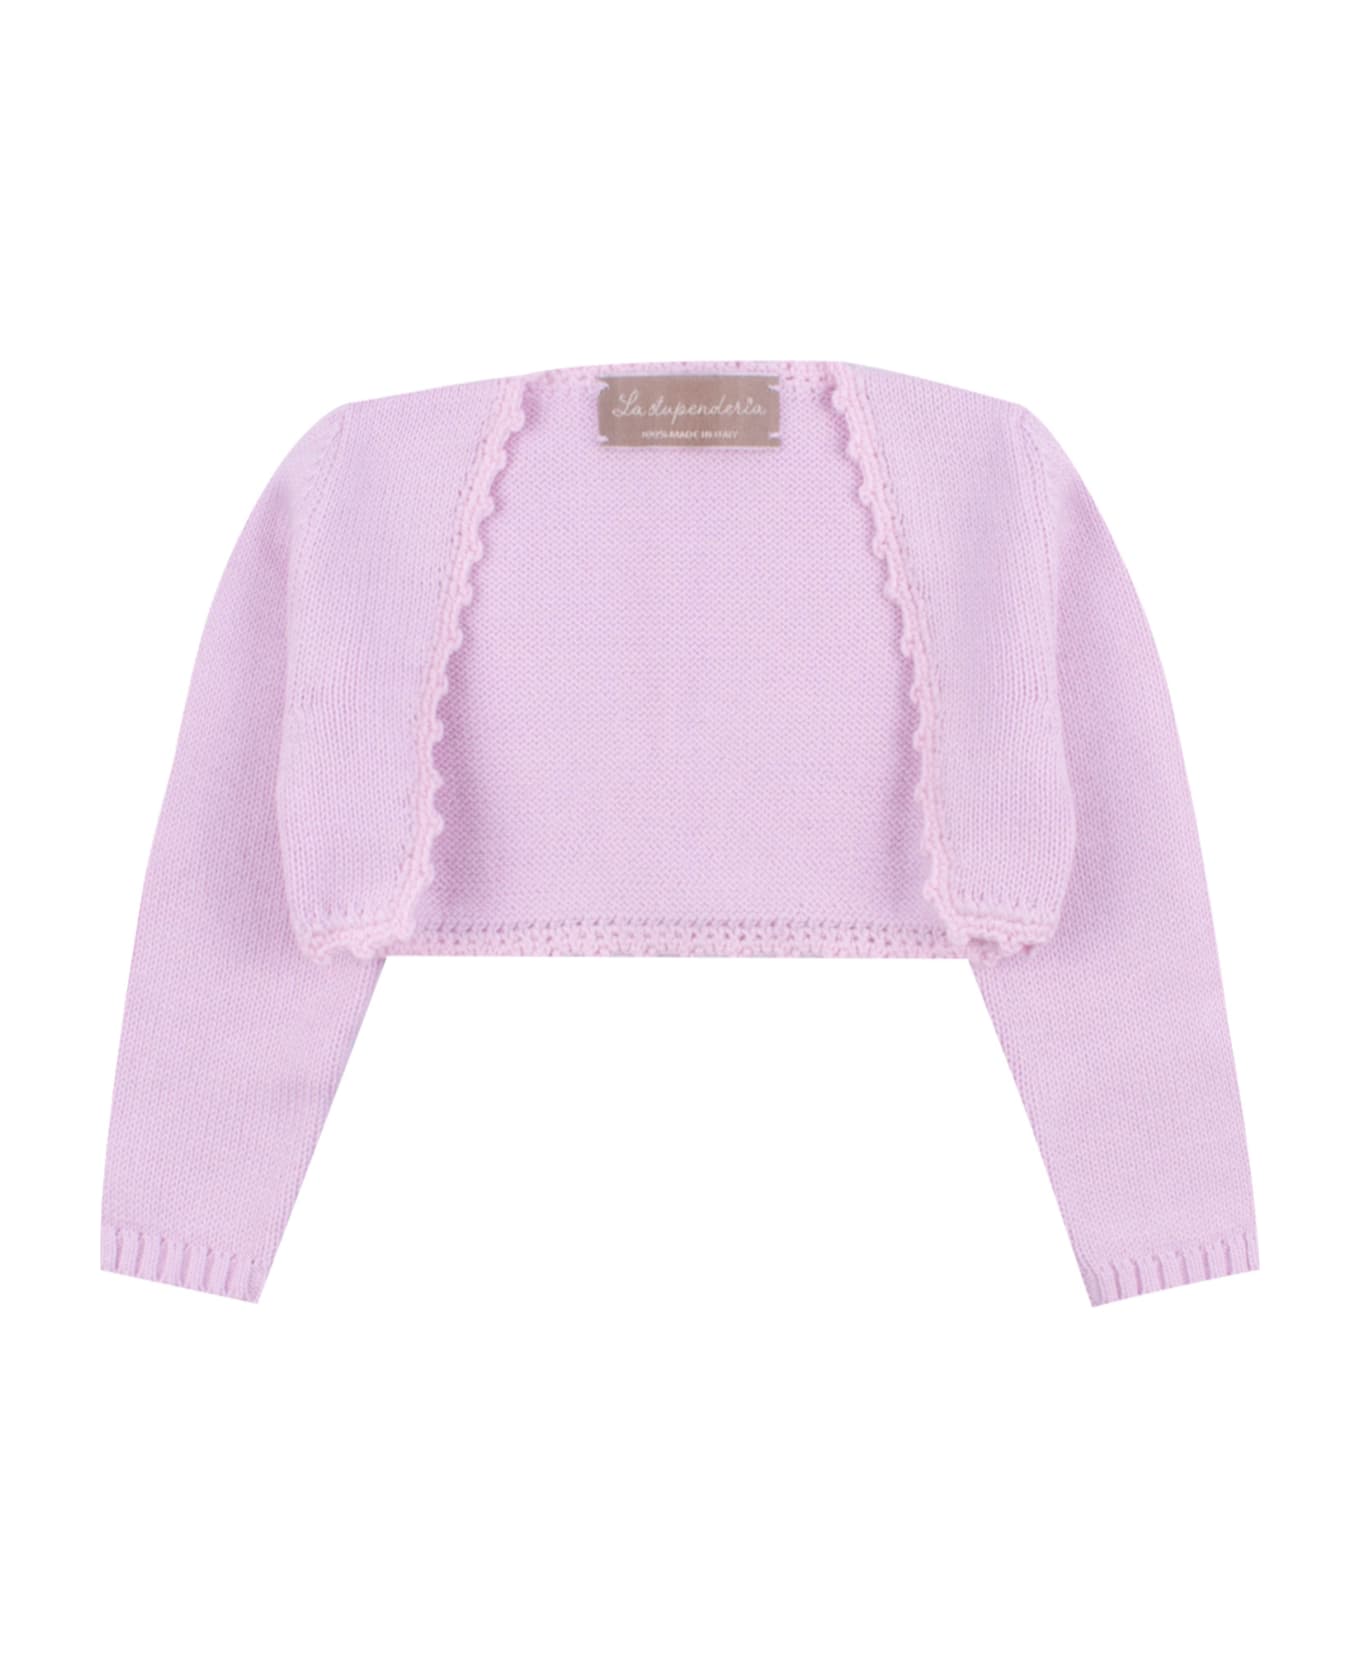 La stupenderia Cotton Sweater - Rose